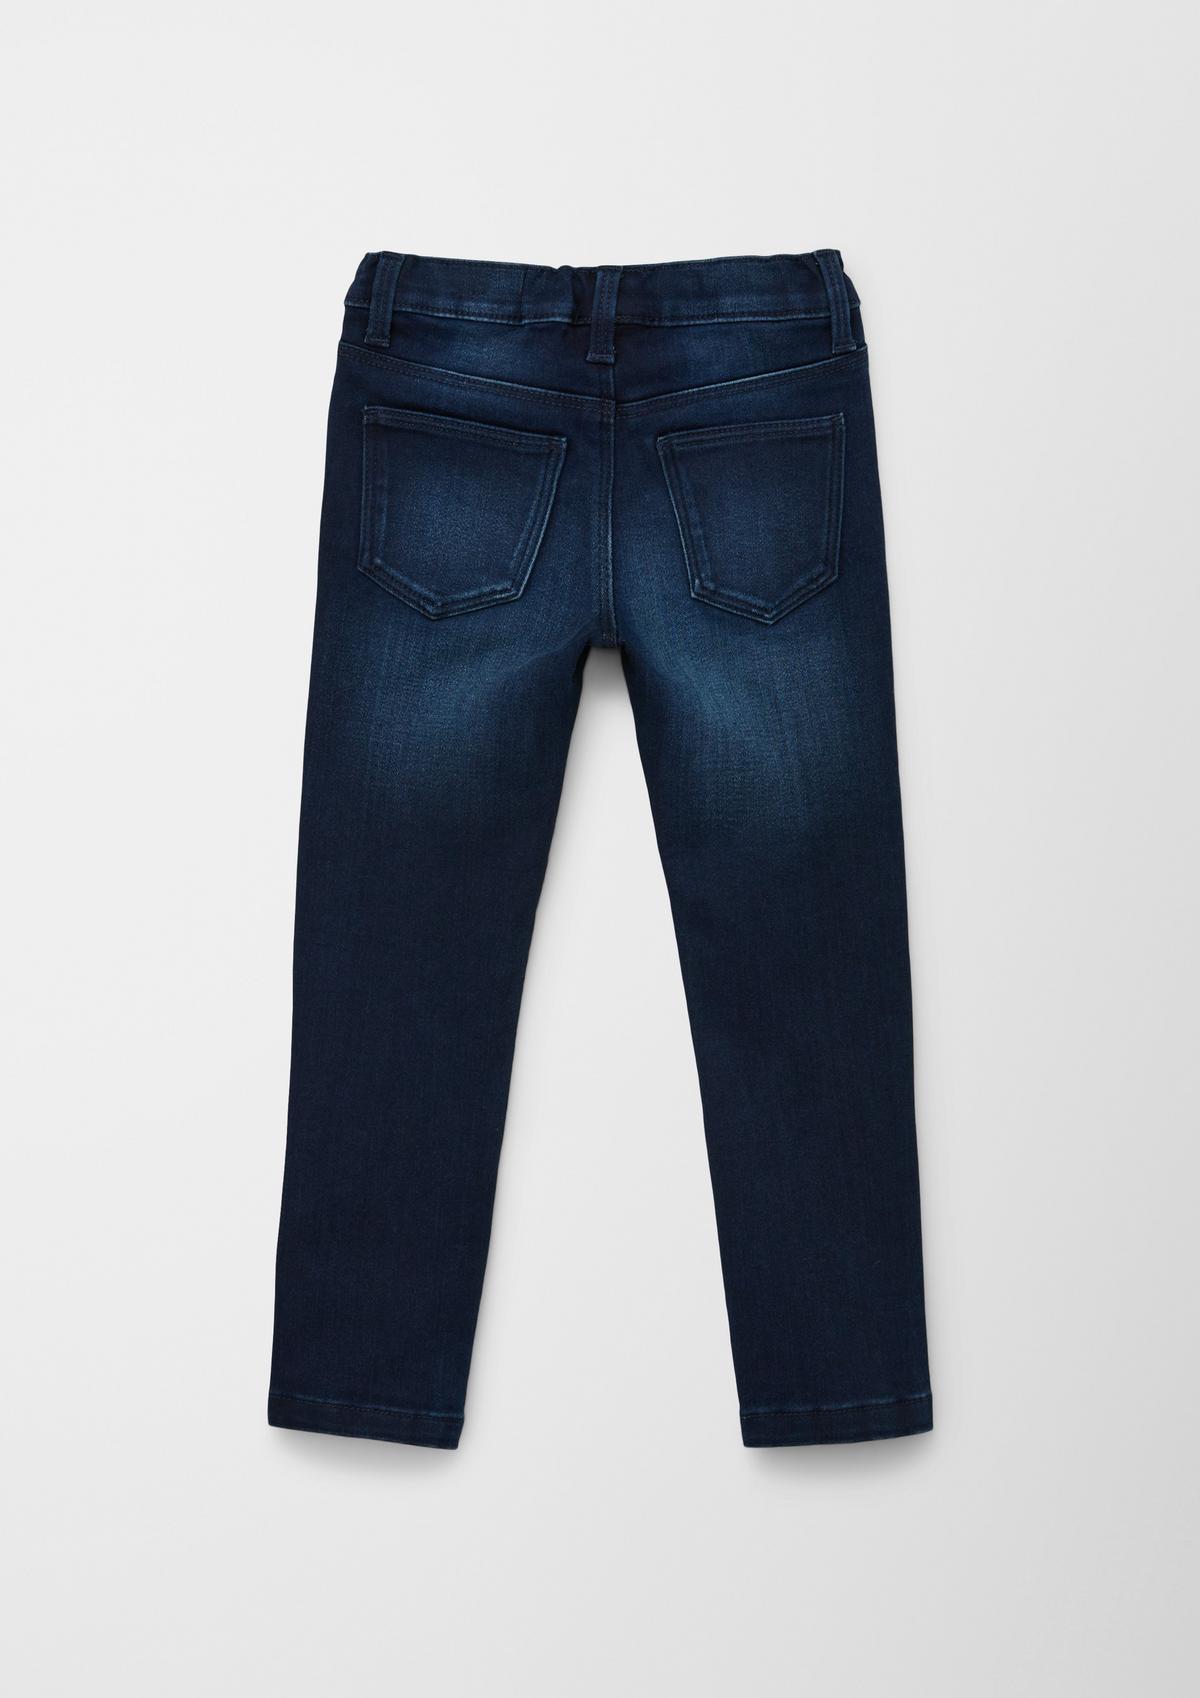 s.Oliver Jeans hlačne pajkice/kroj Slim Fit/High Rise/ozke hlačnice/zvezda iz bleščic